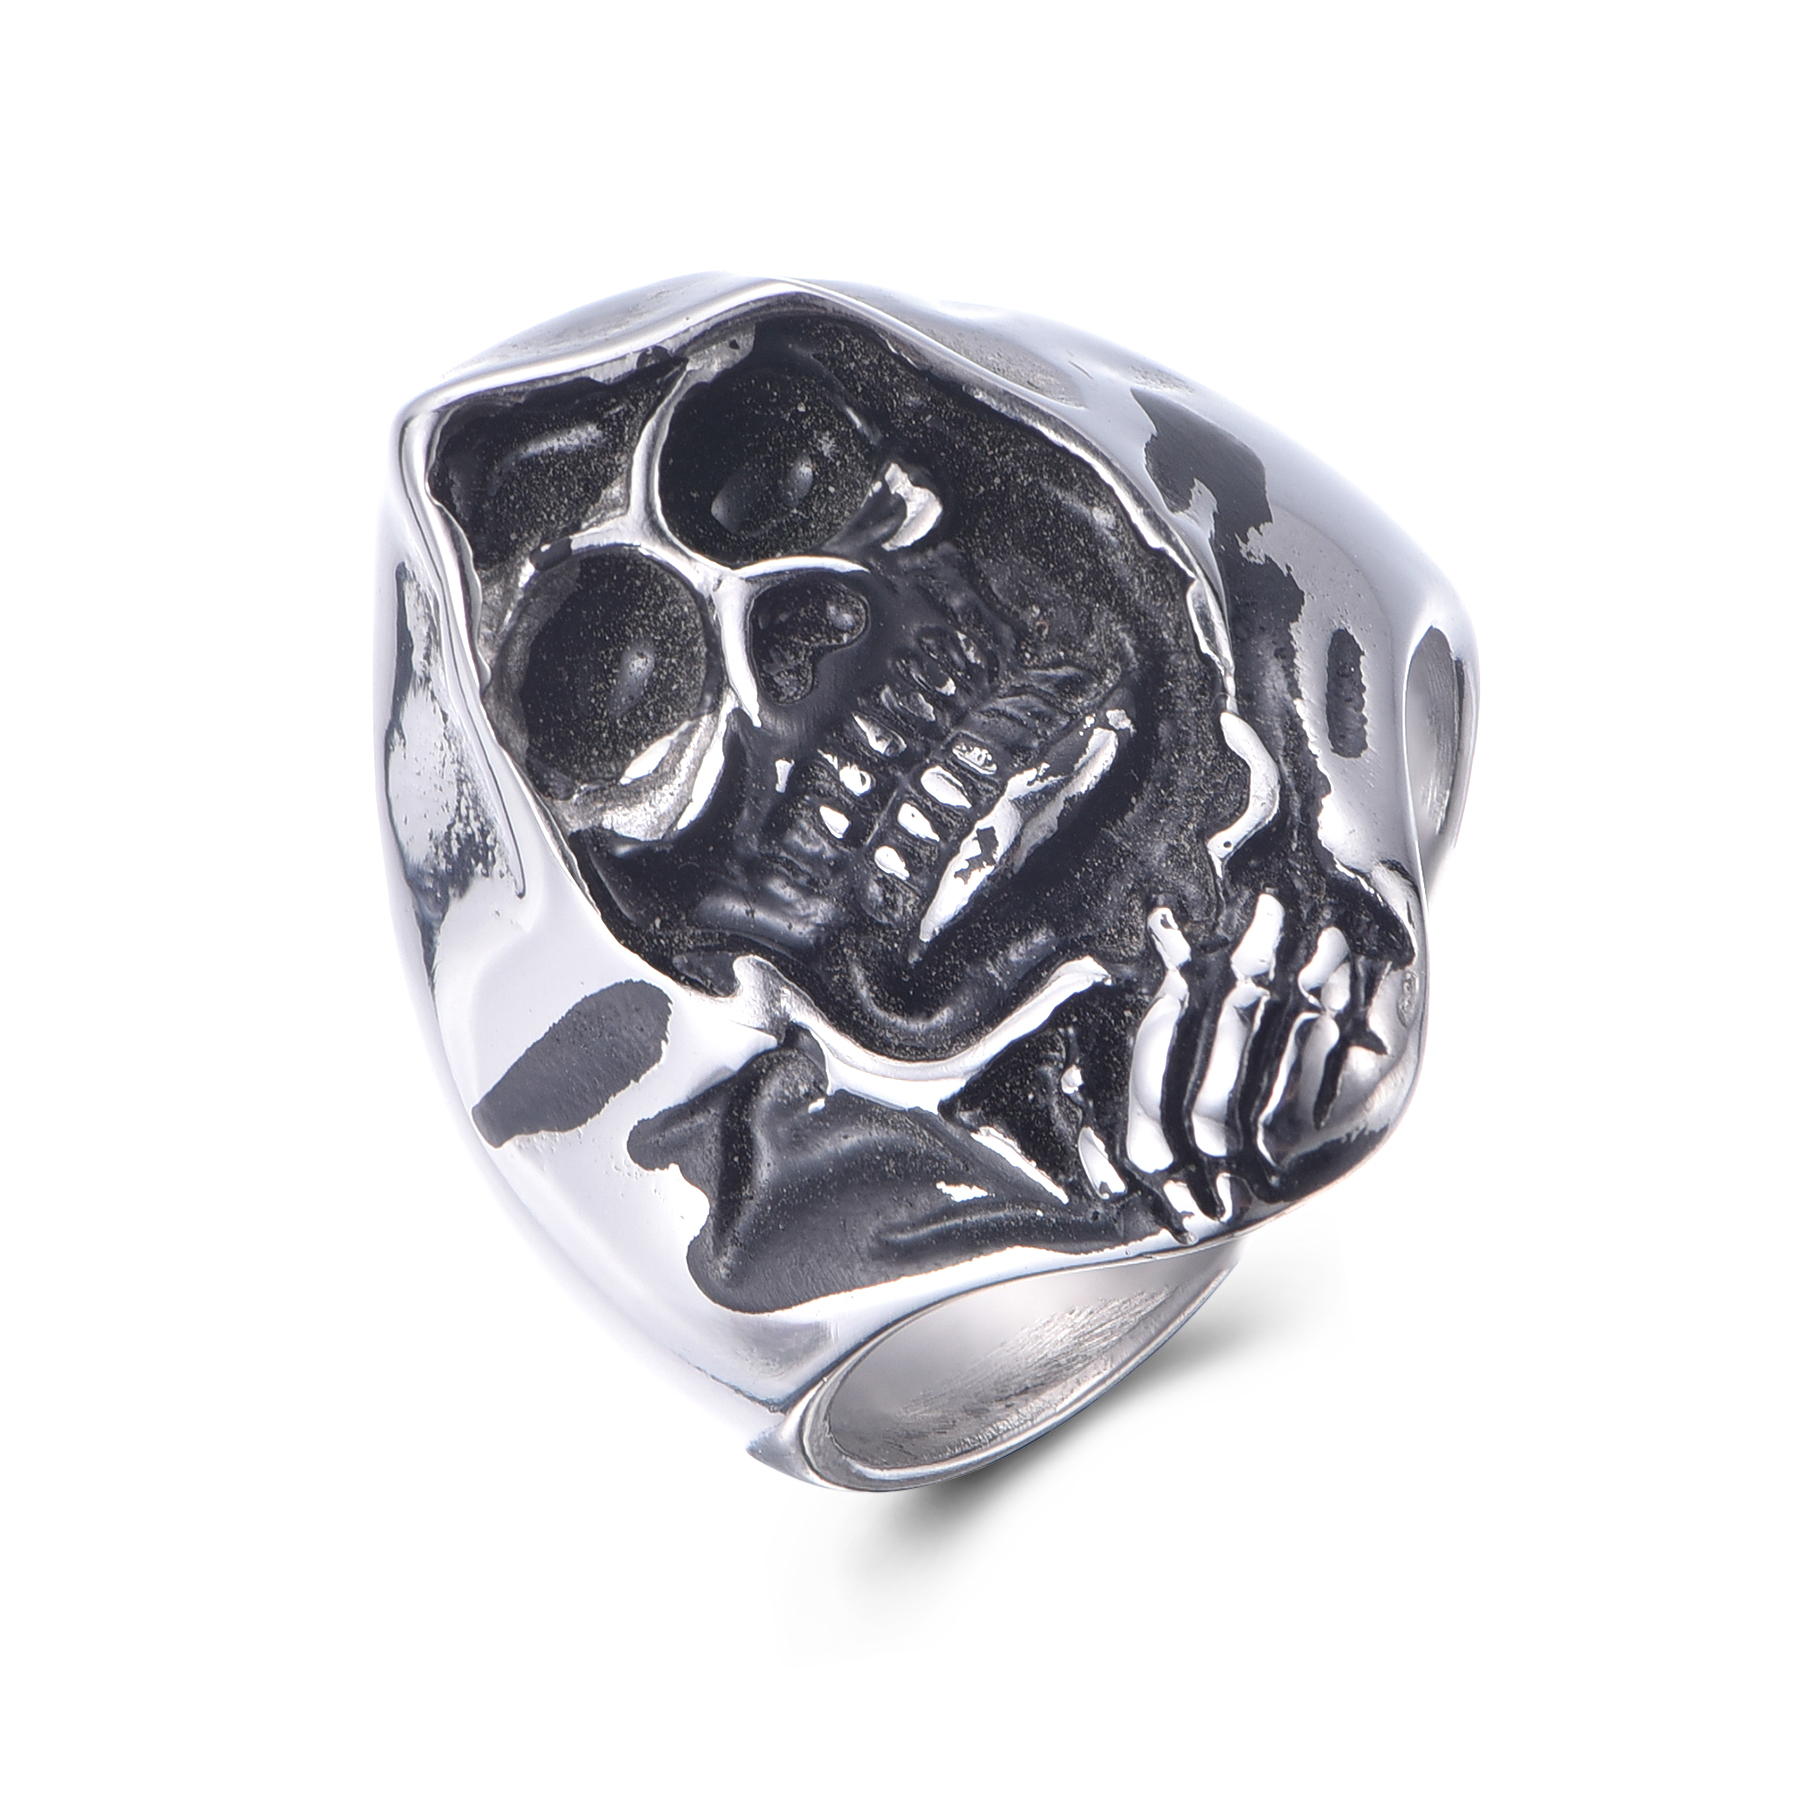 Stainless Steel Popular Skull Casting Punk Style Ring For Men RS10-05